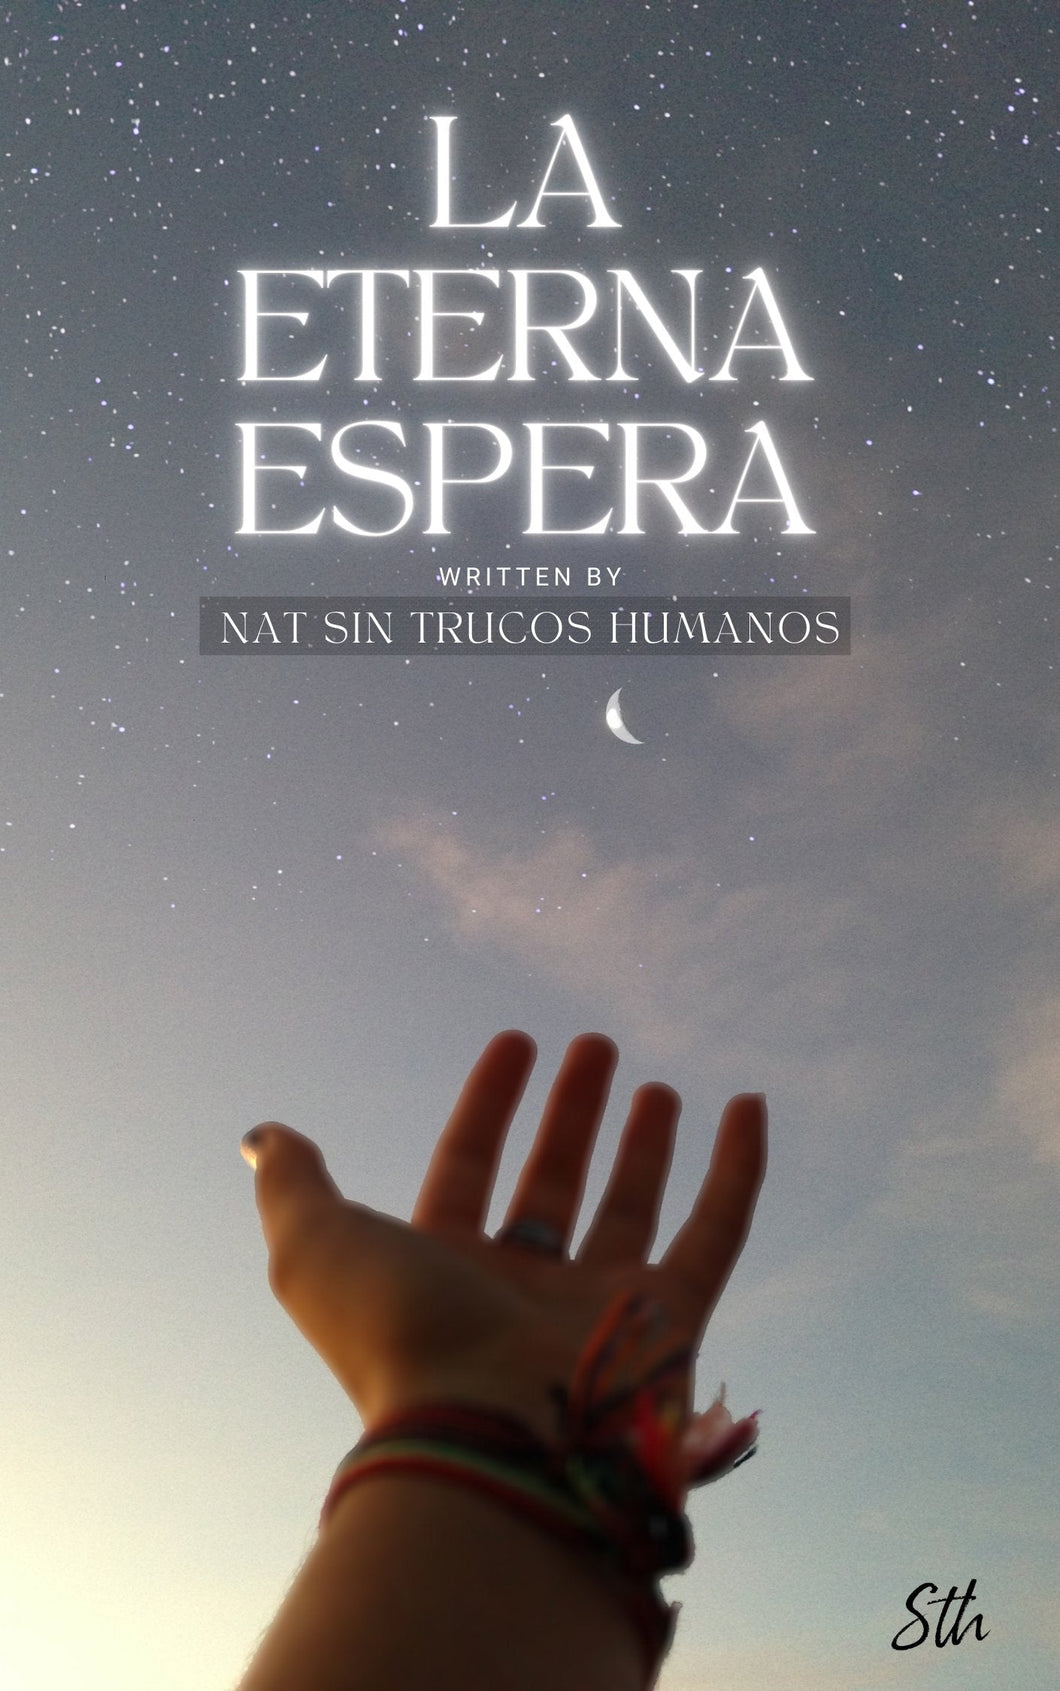 LA ETERNA ESPERA - El Libro de Nat Sth - Manifiesta a tu Persona Específica (Libro Digital) - Sin Trucos Humanos